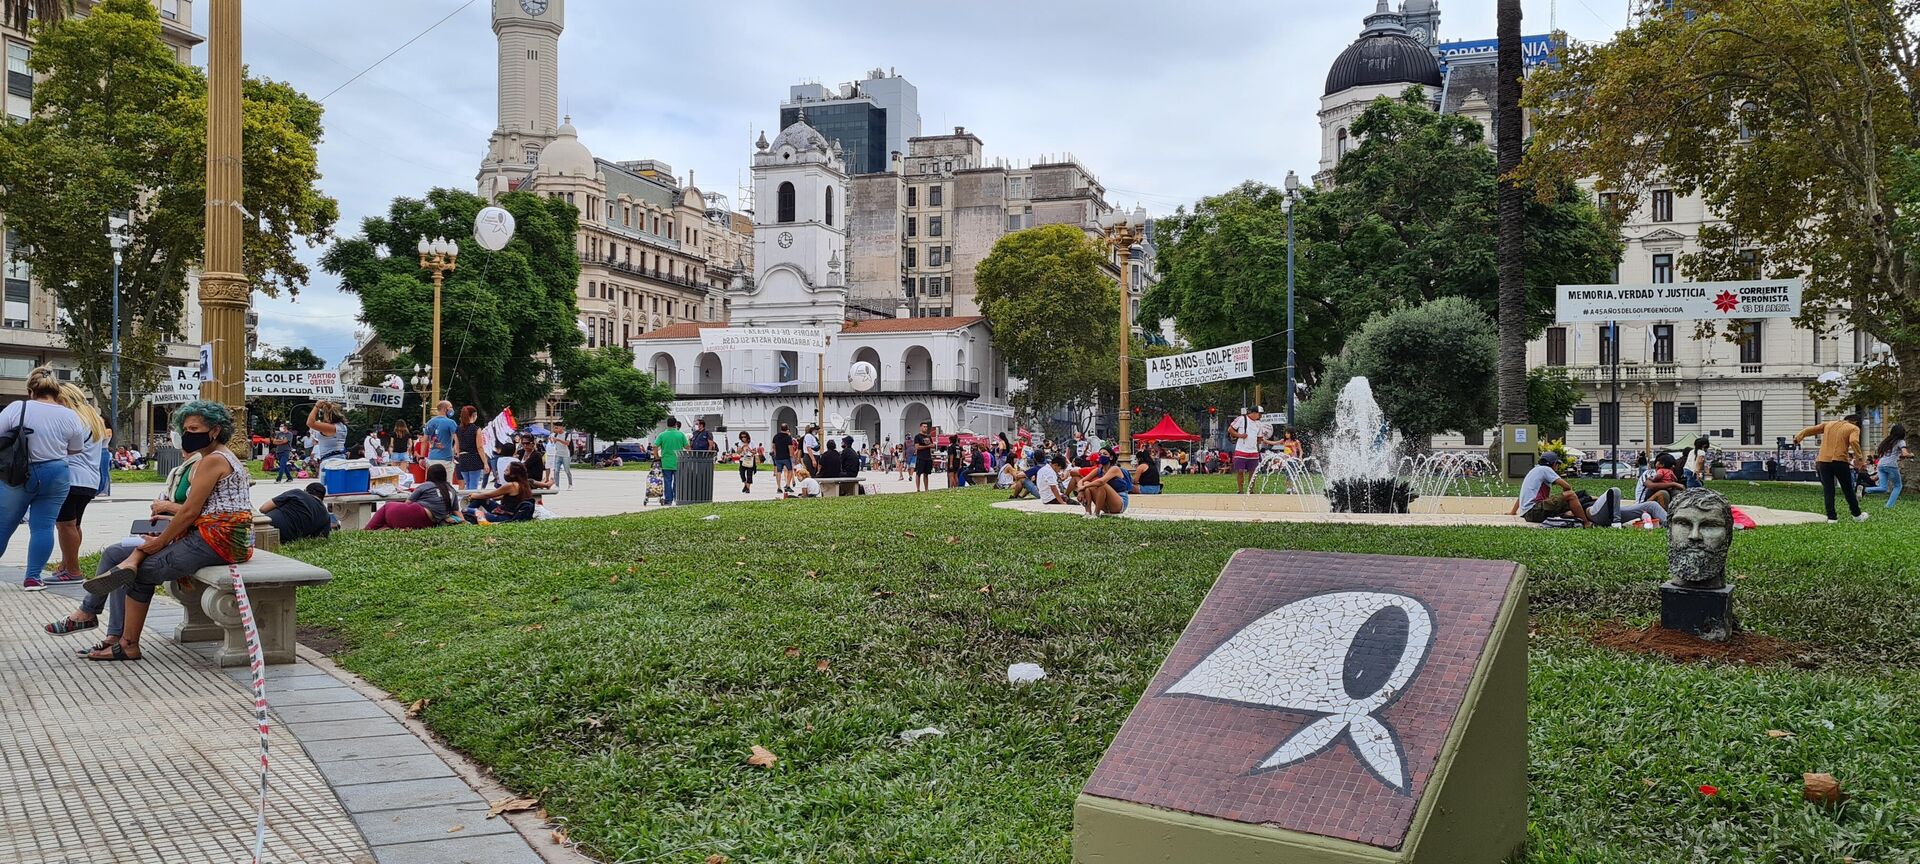 El microcentro incluye los alrededores de la Plaza de Mayo, sede de la administración pública nacional - Sputnik Mundo, 1920, 16.07.2021